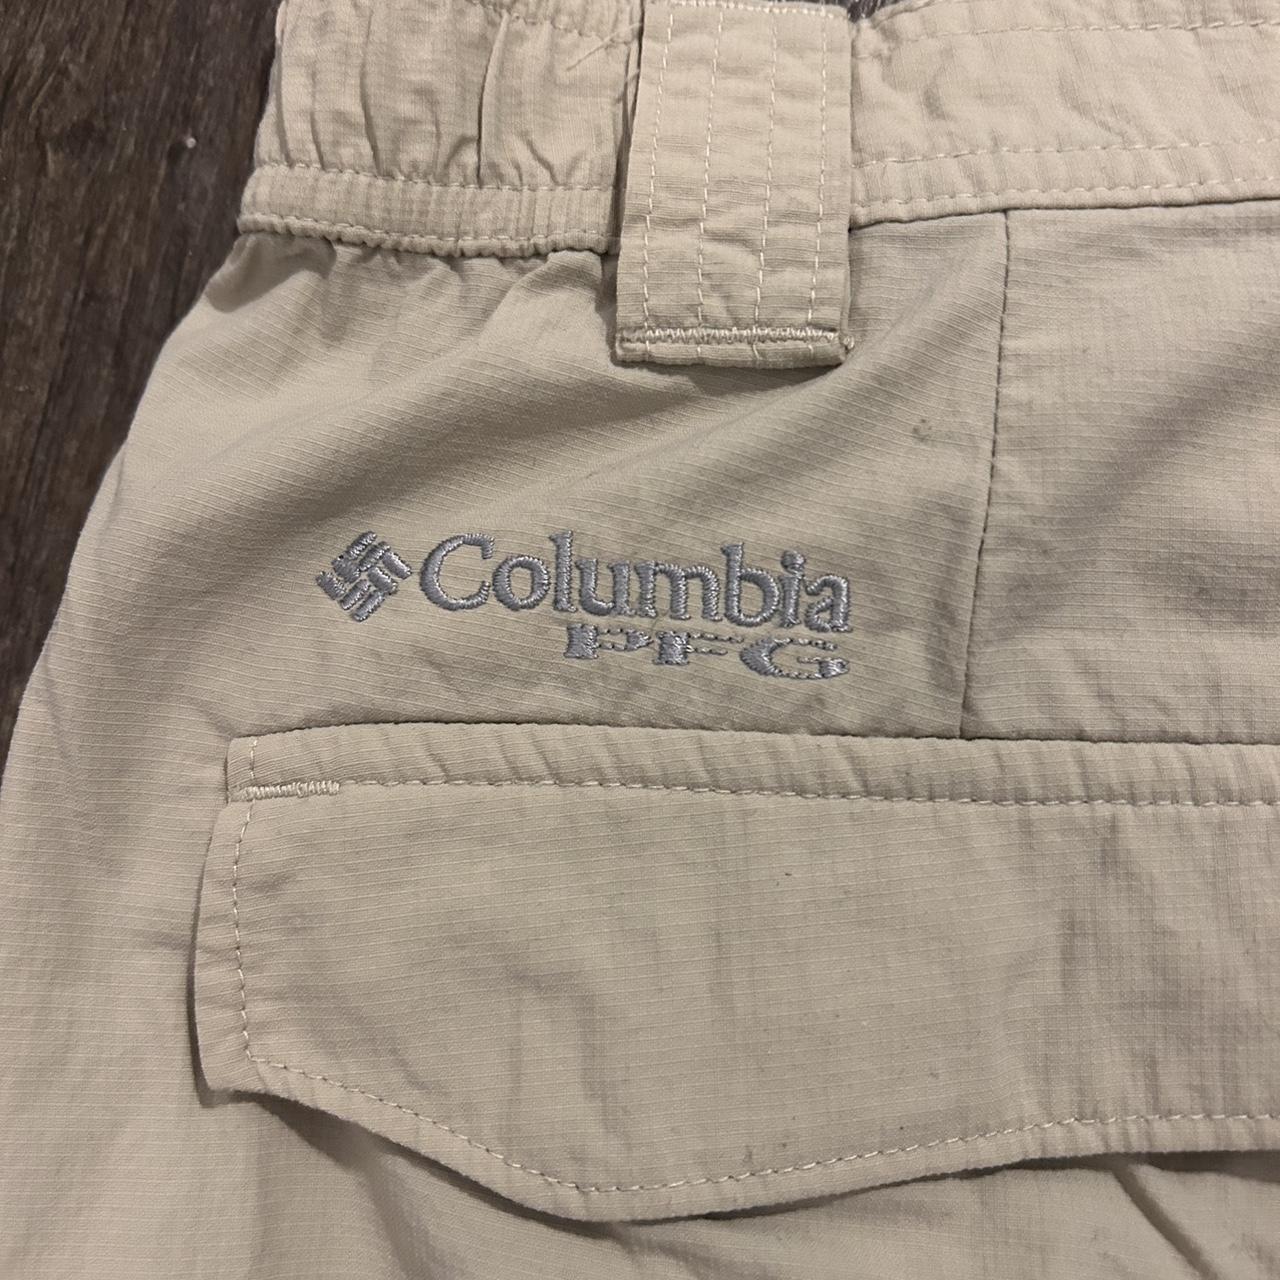  Columbia Fishing Pants